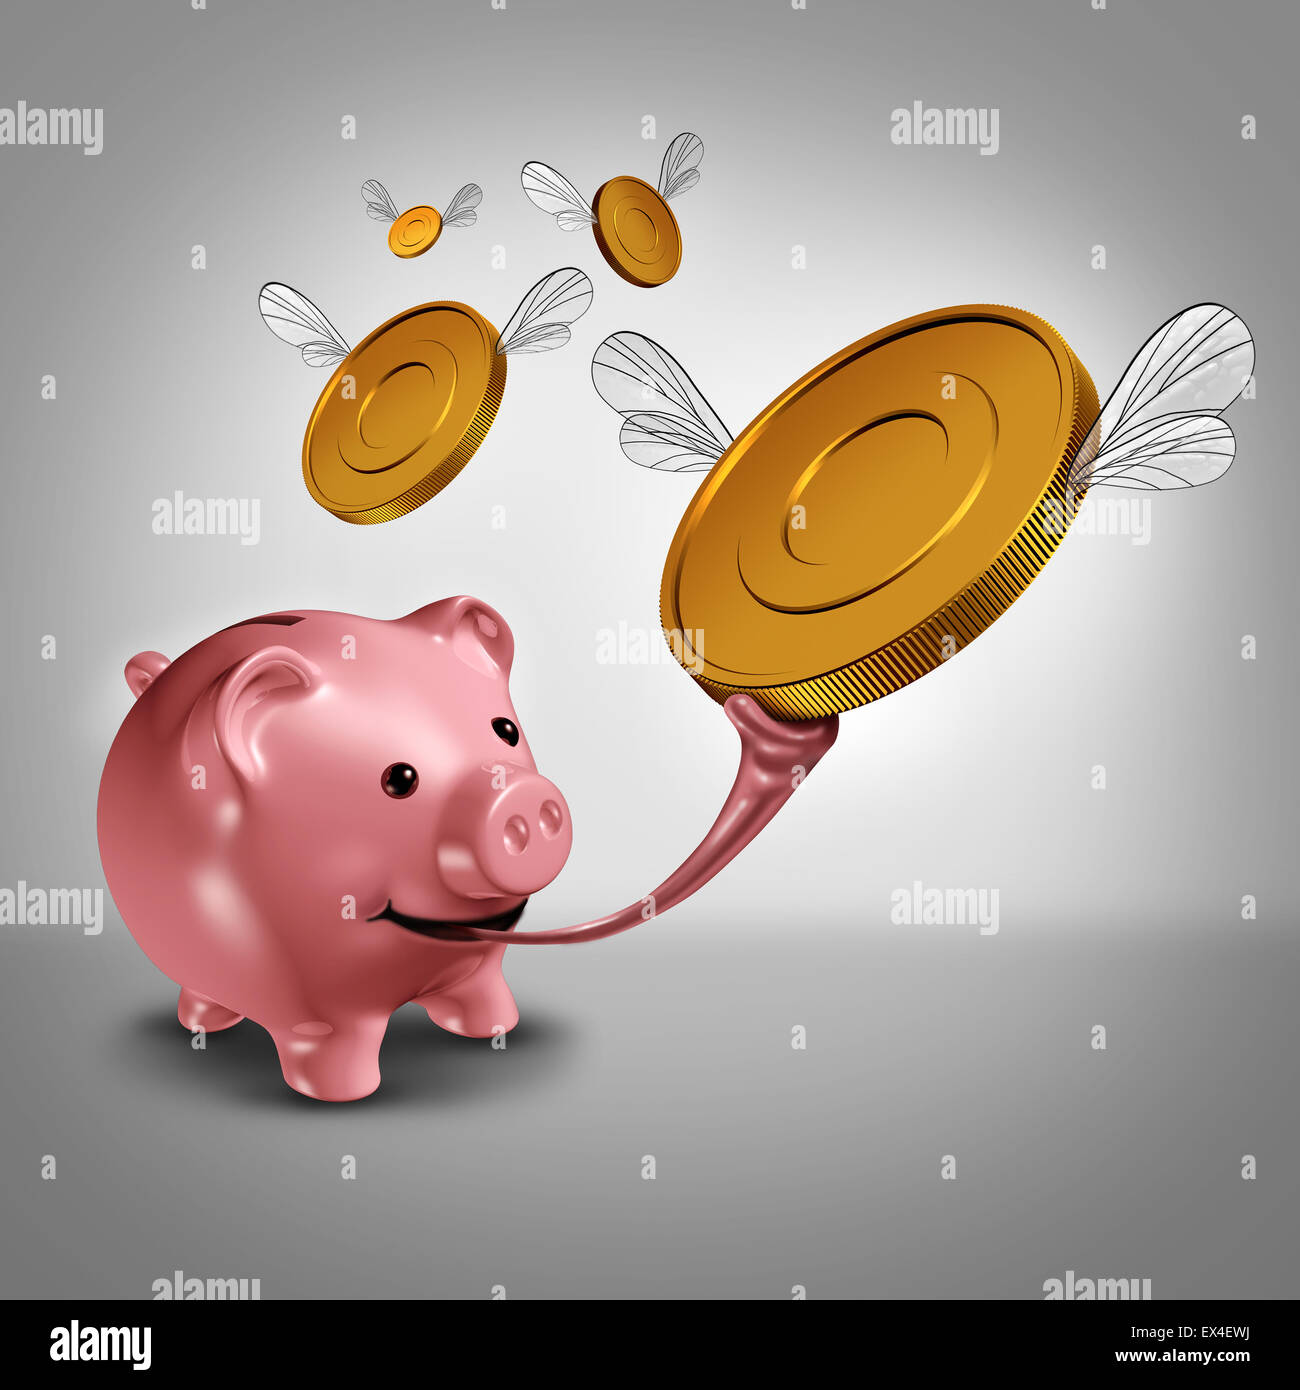 Strategia di risparmio e di aumentare i guadagni finanziari come il concetto di un salvadanaio con una lunga lingua di rana cattura alato di moneta in oro monete in aria come una metafora di denaro per il bilancio di successo. Foto Stock